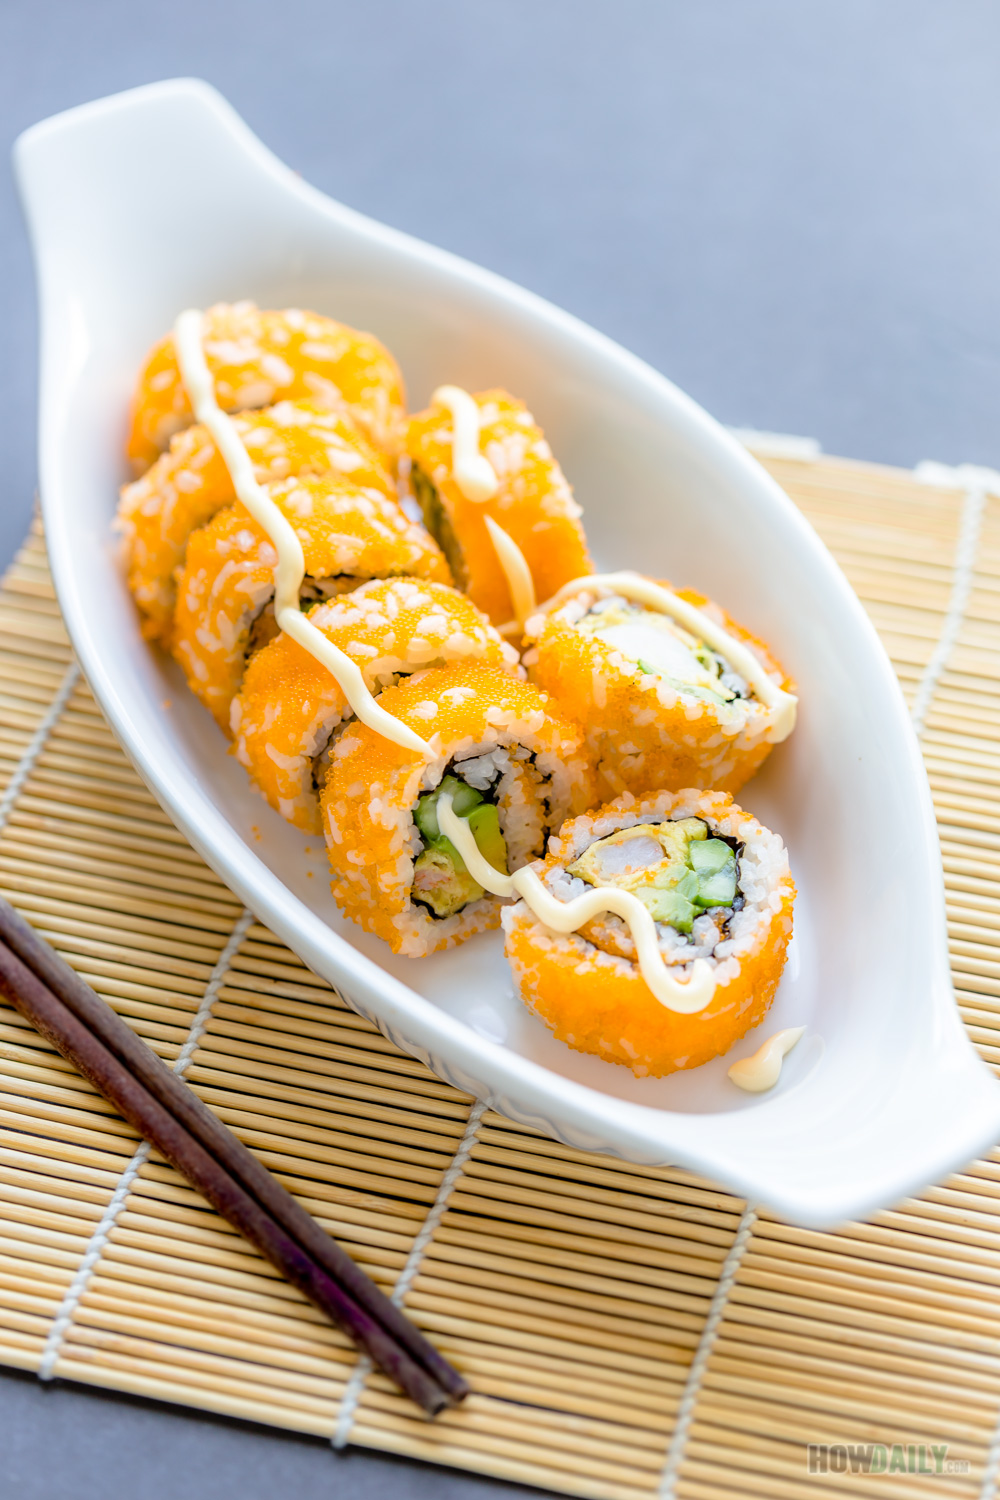 maki sushi roll